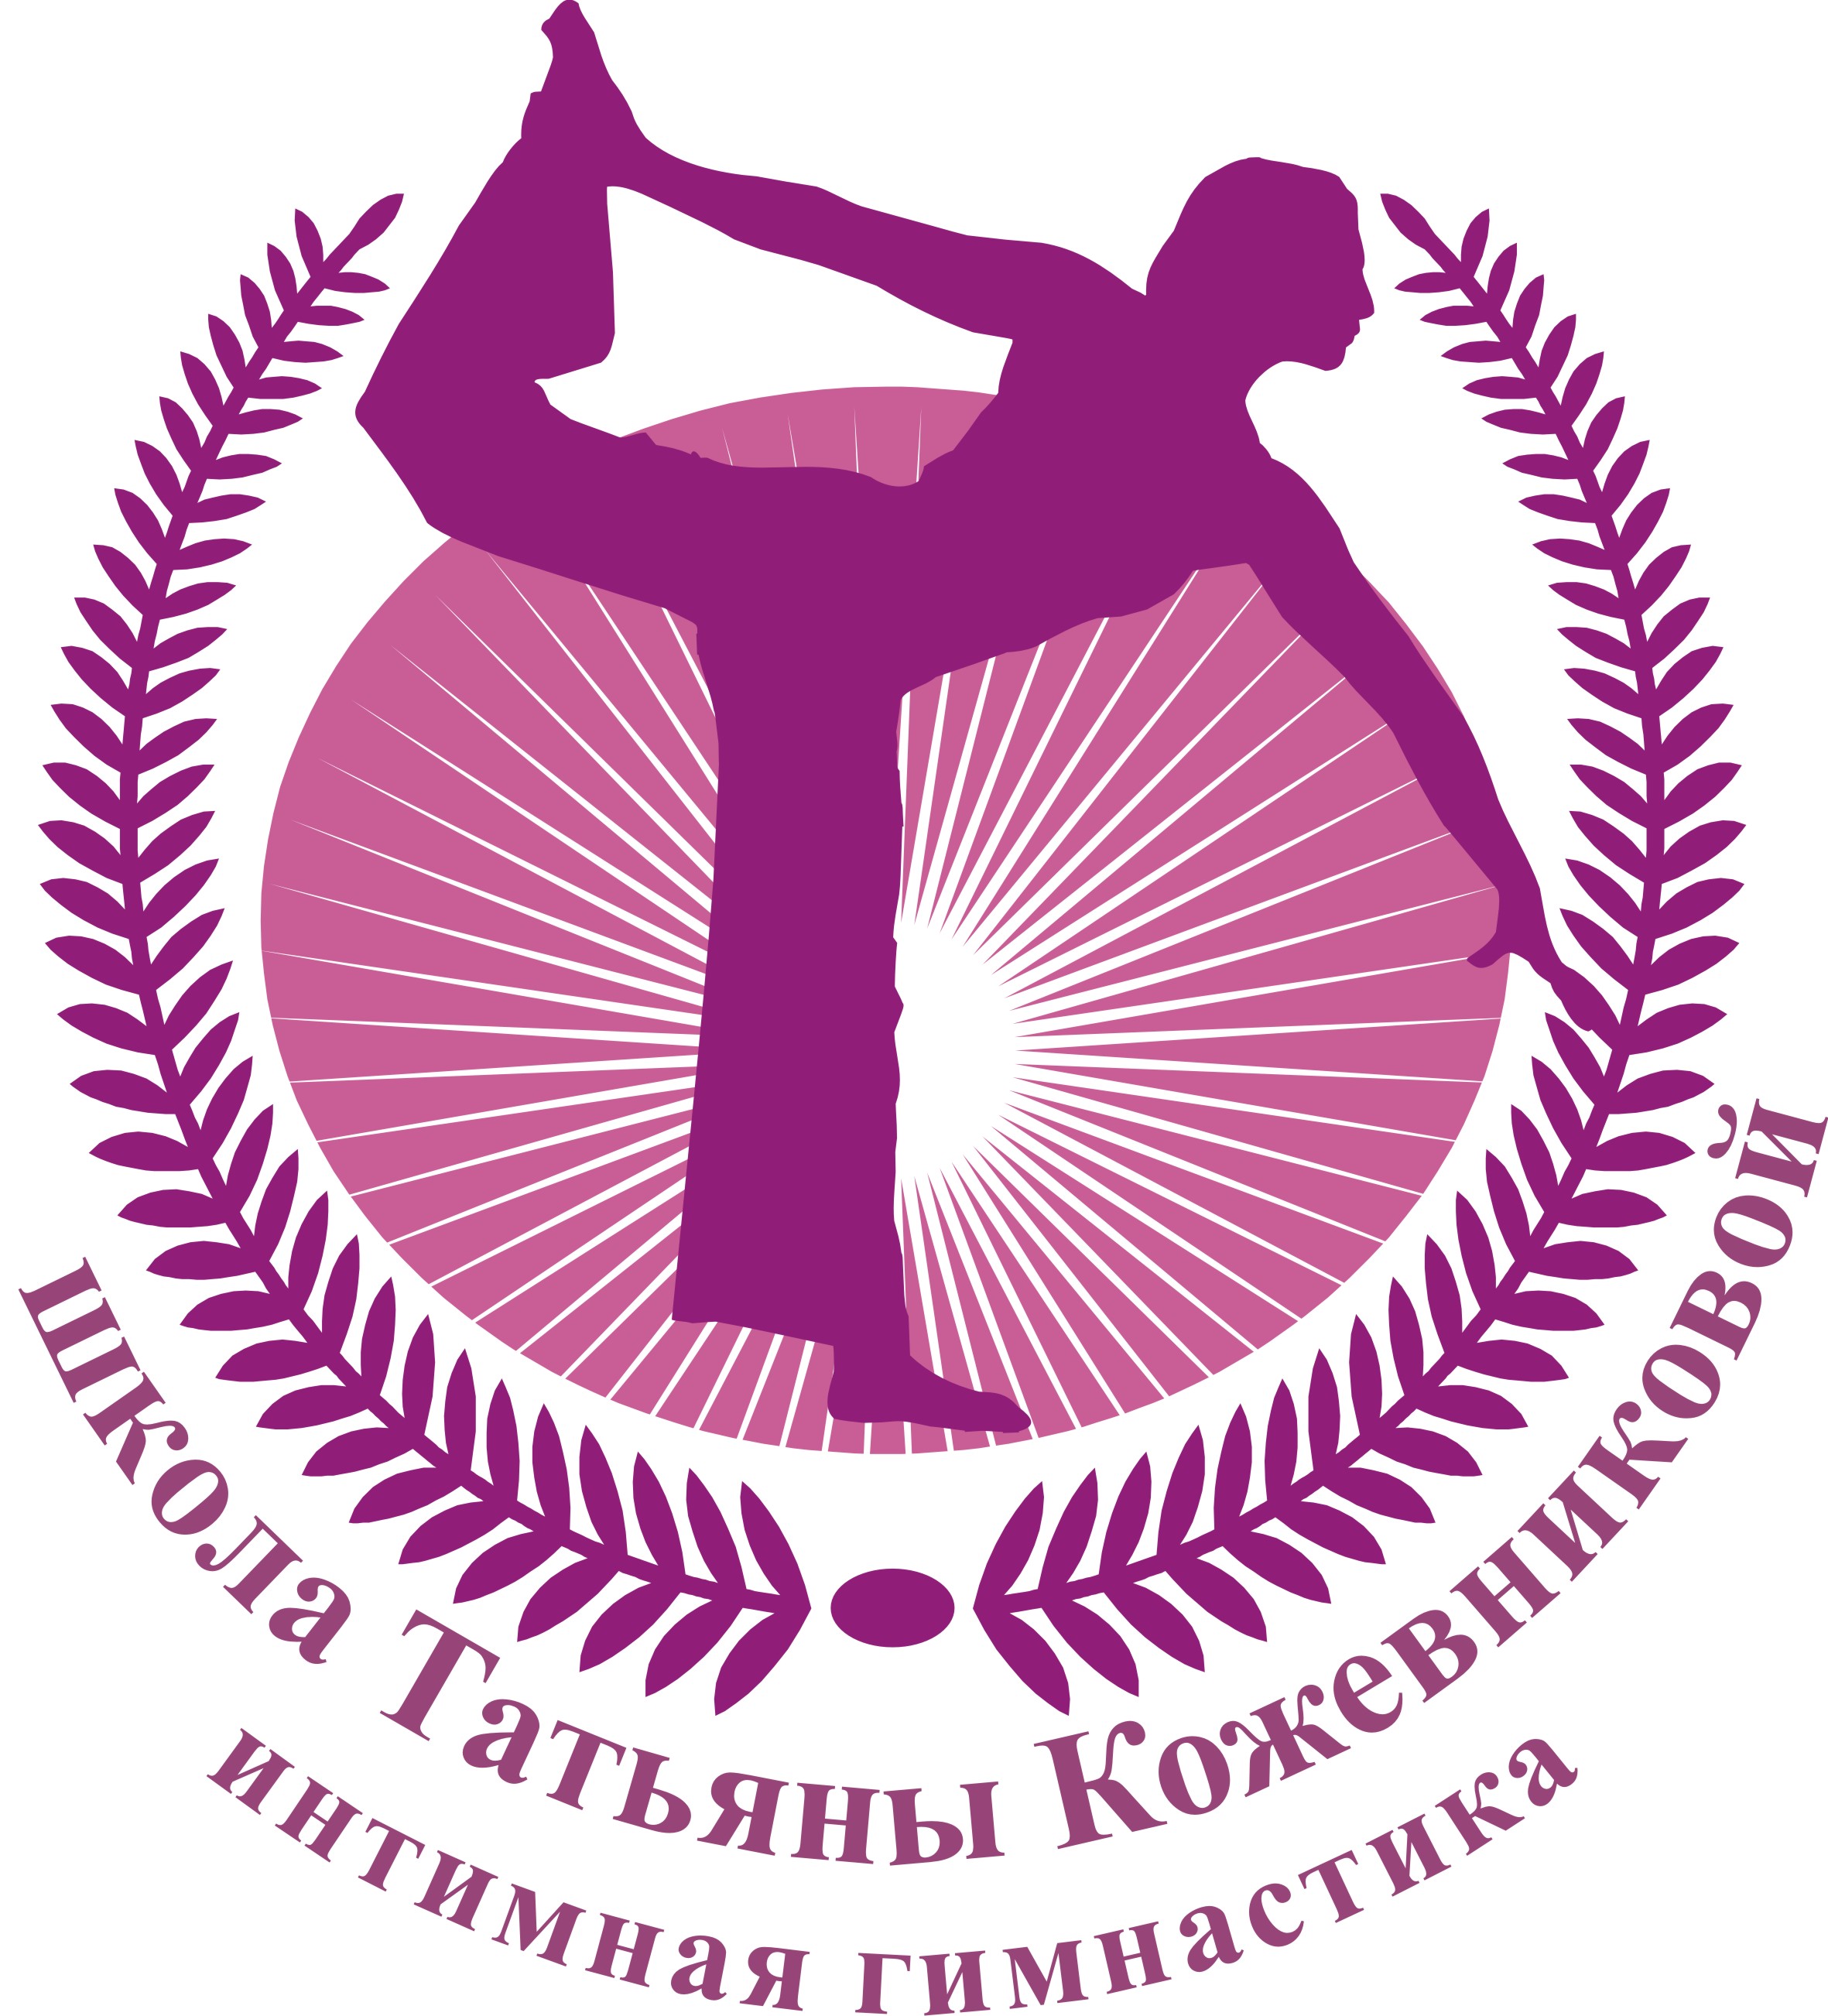 Интимная гимнастика: Татьяна Кожевникова в Уфе | ВКонтакте